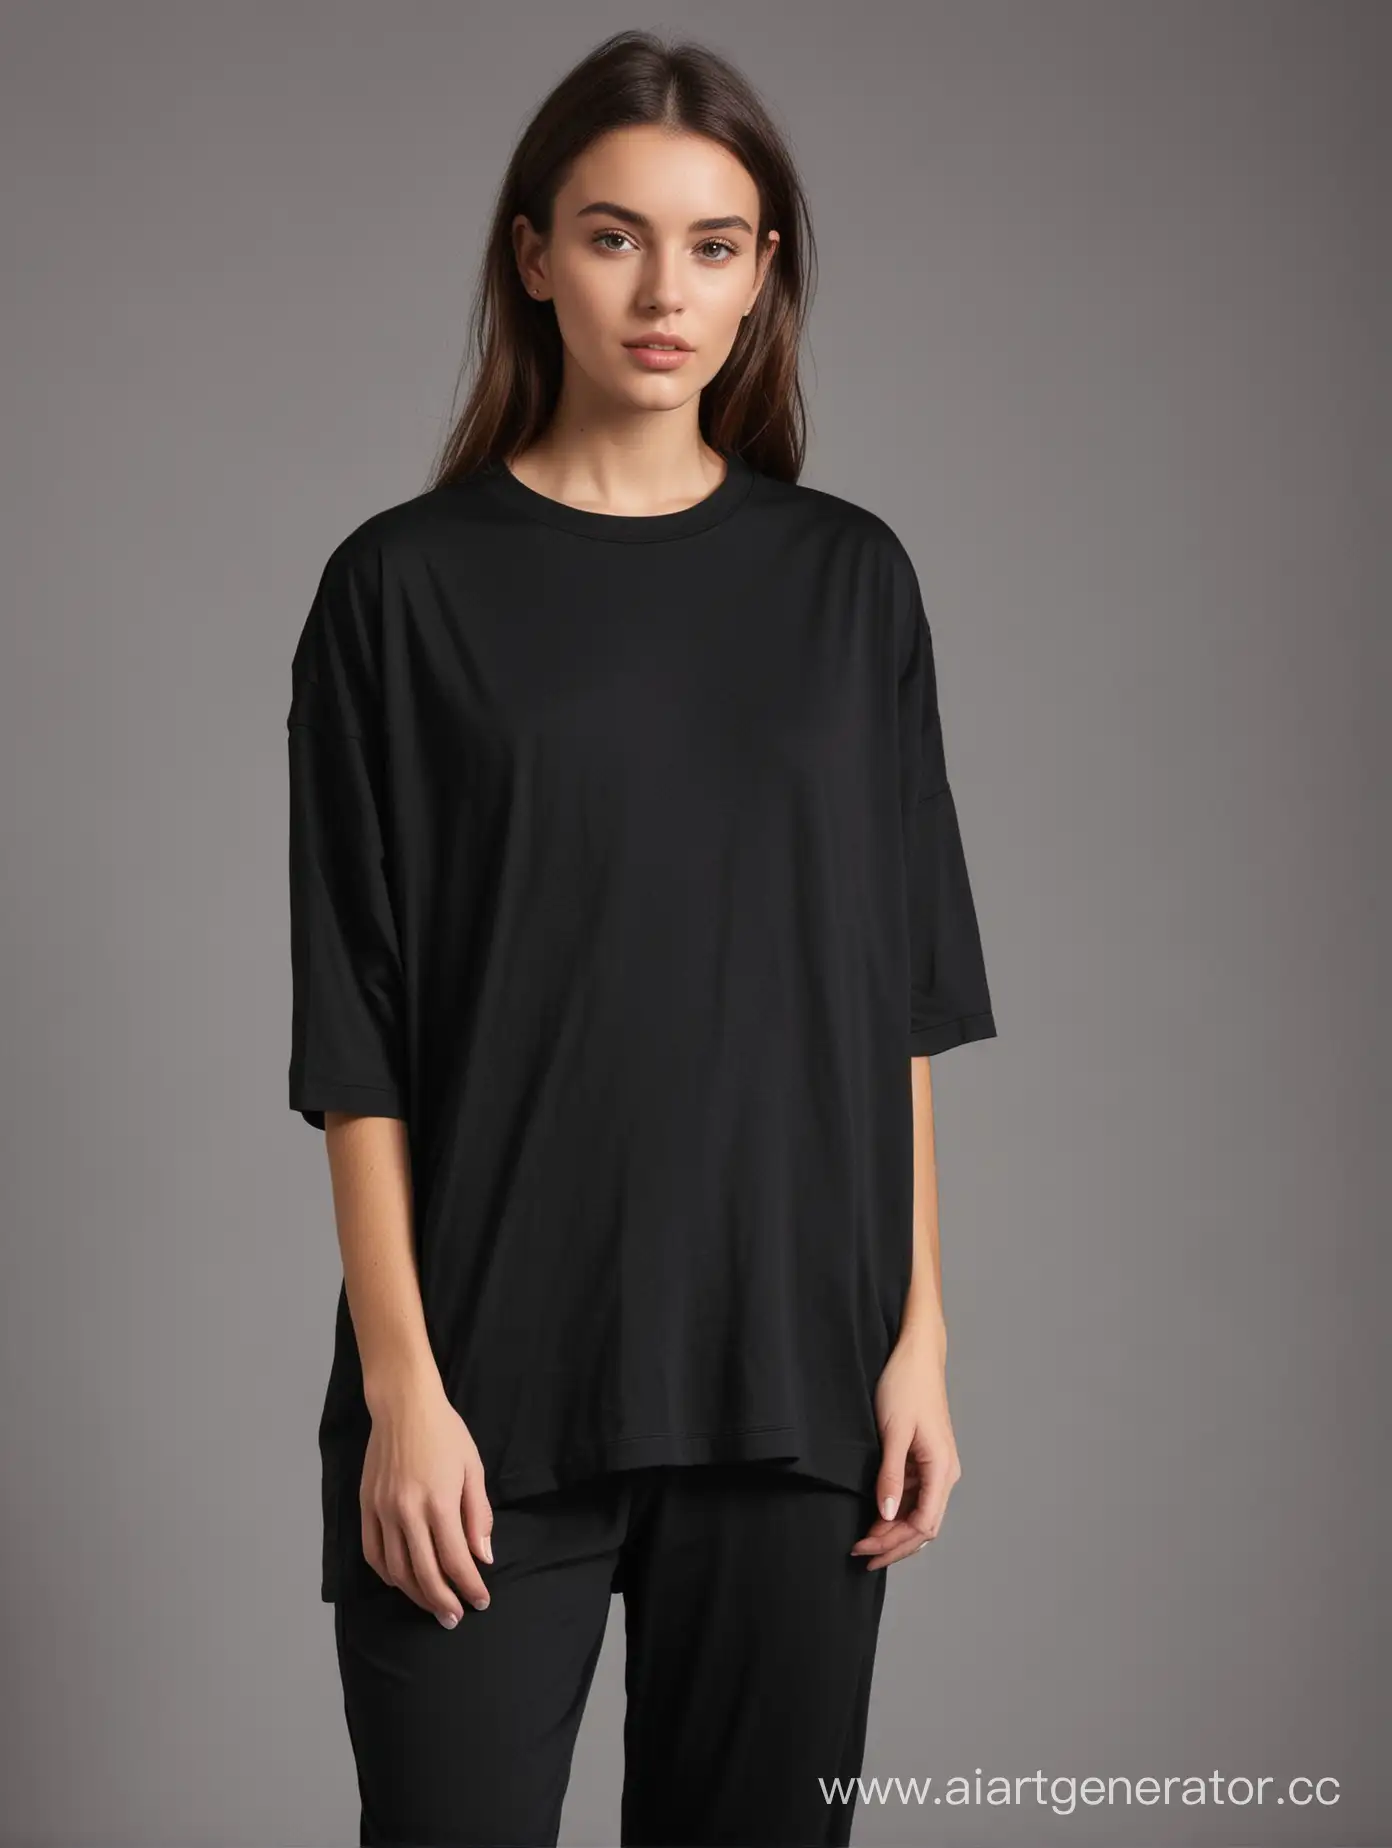 Stylish-Black-Oversized-TShirt-Fashion-Statement